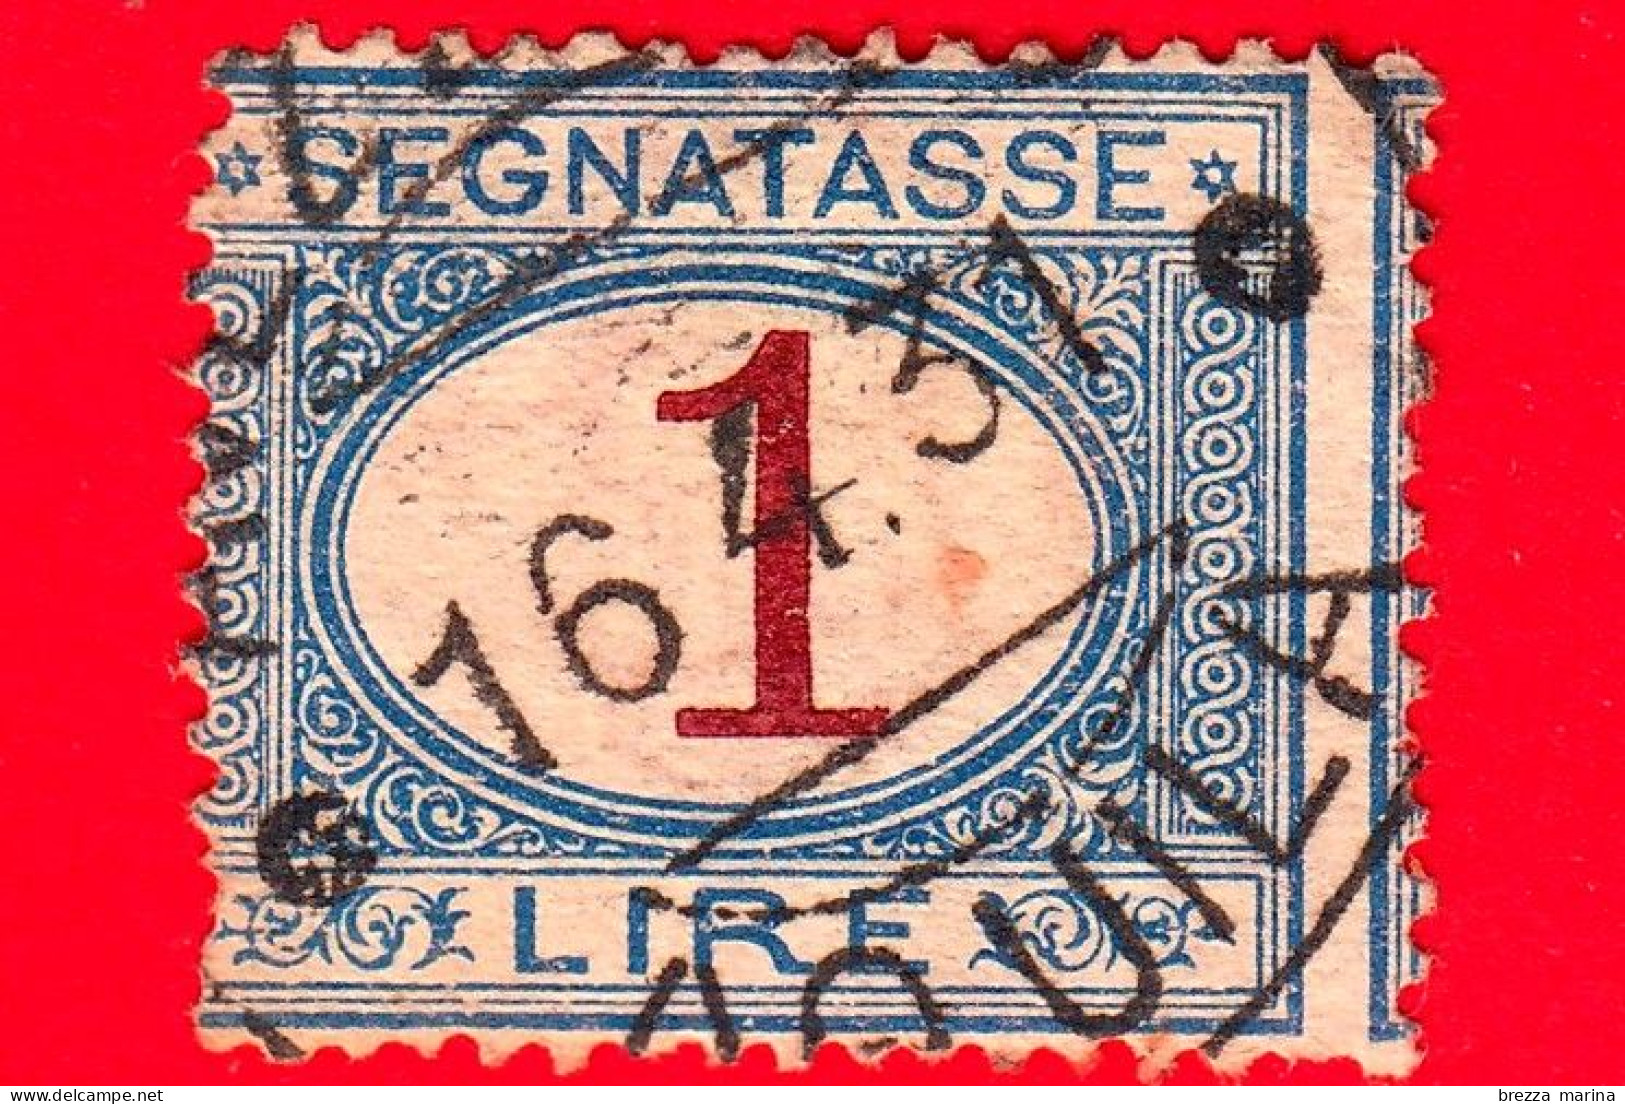 REGNO D'ITALIA - Usato - 1890 - Segnatasse - Cifra Entro Un Ovale - 1 L. - Portomarken